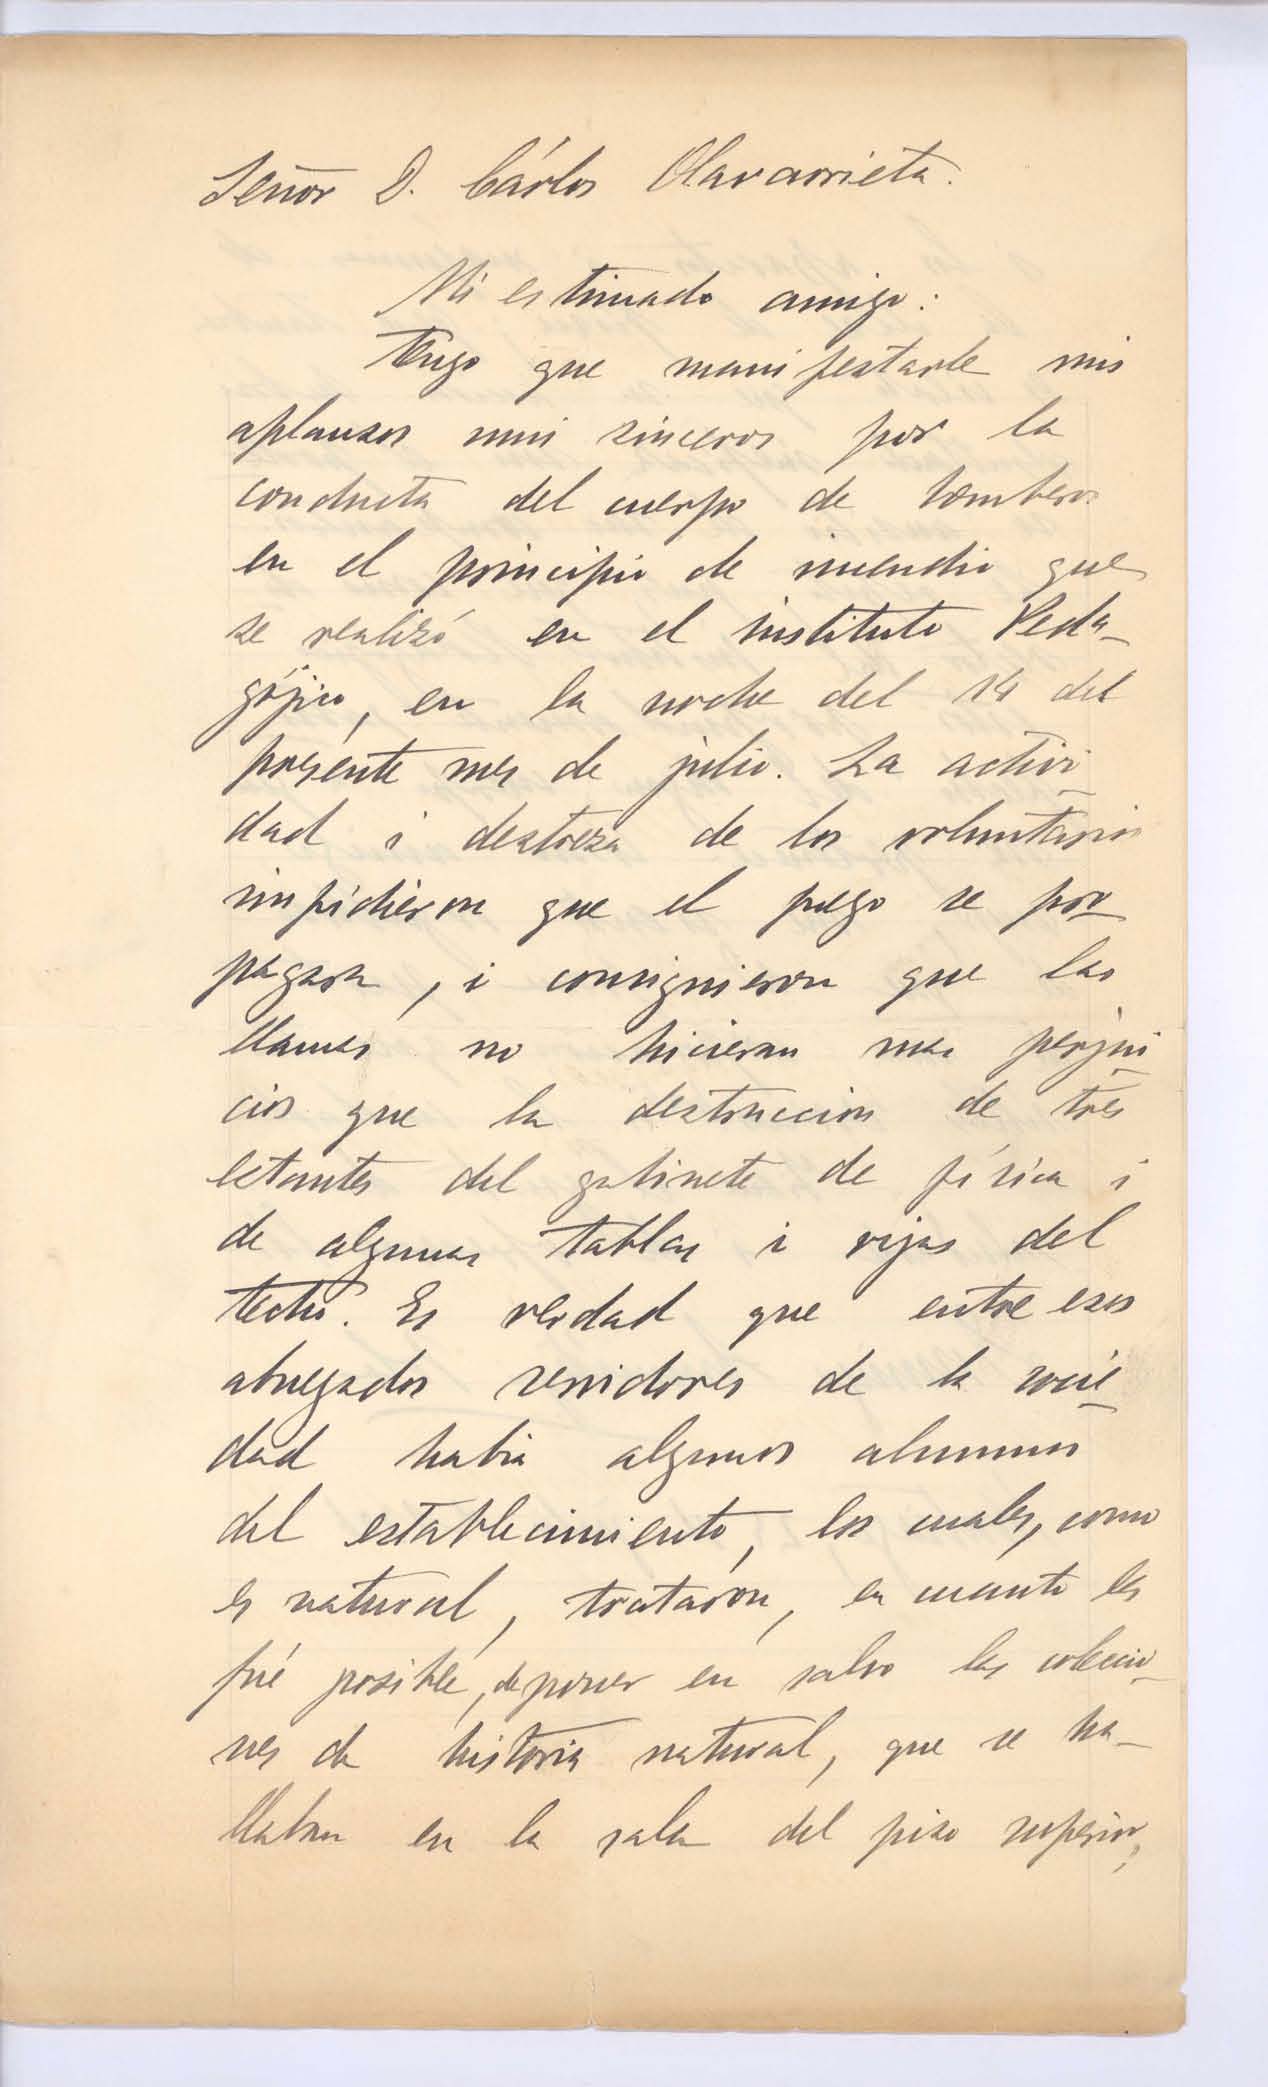 [Carta] 1906 jul. 24, Santiago, Chile [a] Carlos Olavarrieta[manuscrito]. Autor: Domingo Amunátegui